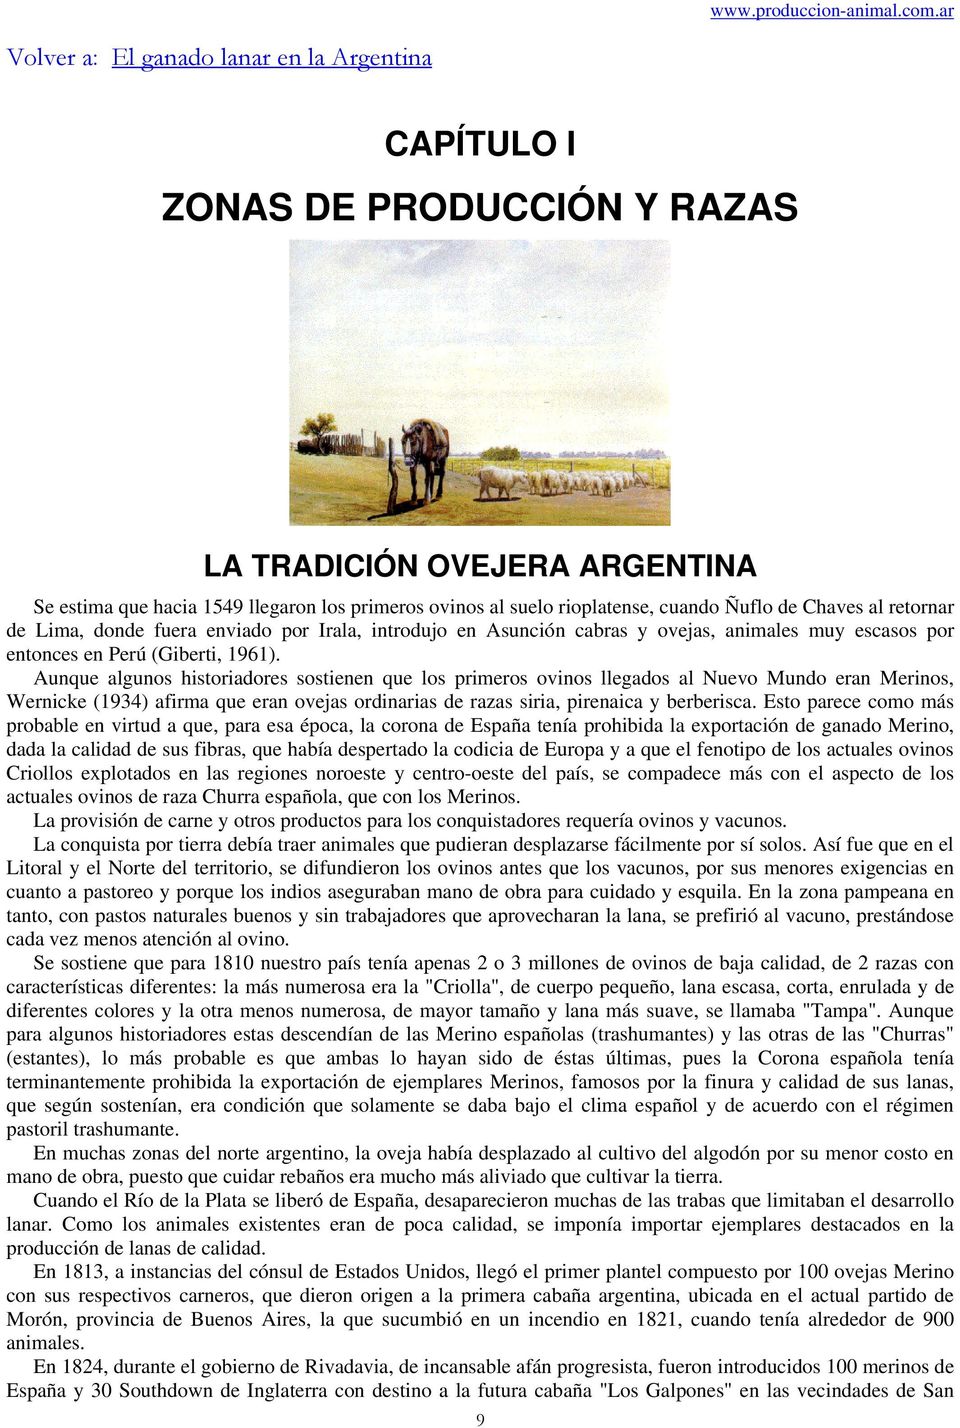 Ñuflo de Chaves al retornar de Lima, donde fuera enviado por Irala, introdujo en Asunción cabras y ovejas, animales muy escasos por entonces en Perú (Giberti, 1961).